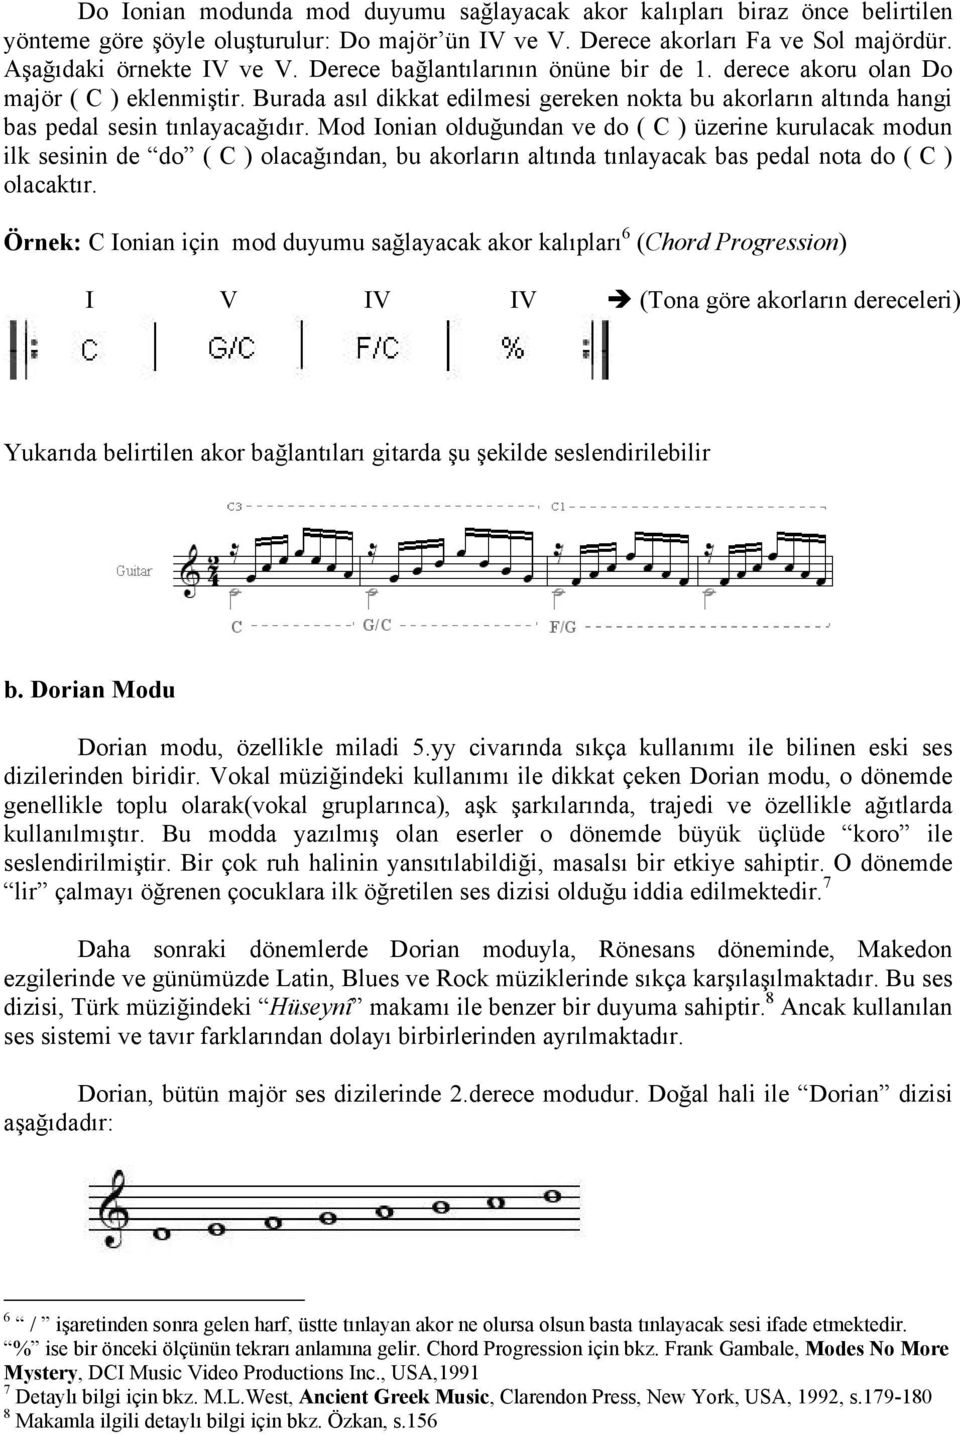 Mod Ionian olduğundan ve do ( C ) üzerine kurulacak modun ilk sesinin de do ( C ) olacağından, bu akorların altında tınlayacak bas pedal nota do ( C ) olacaktır.